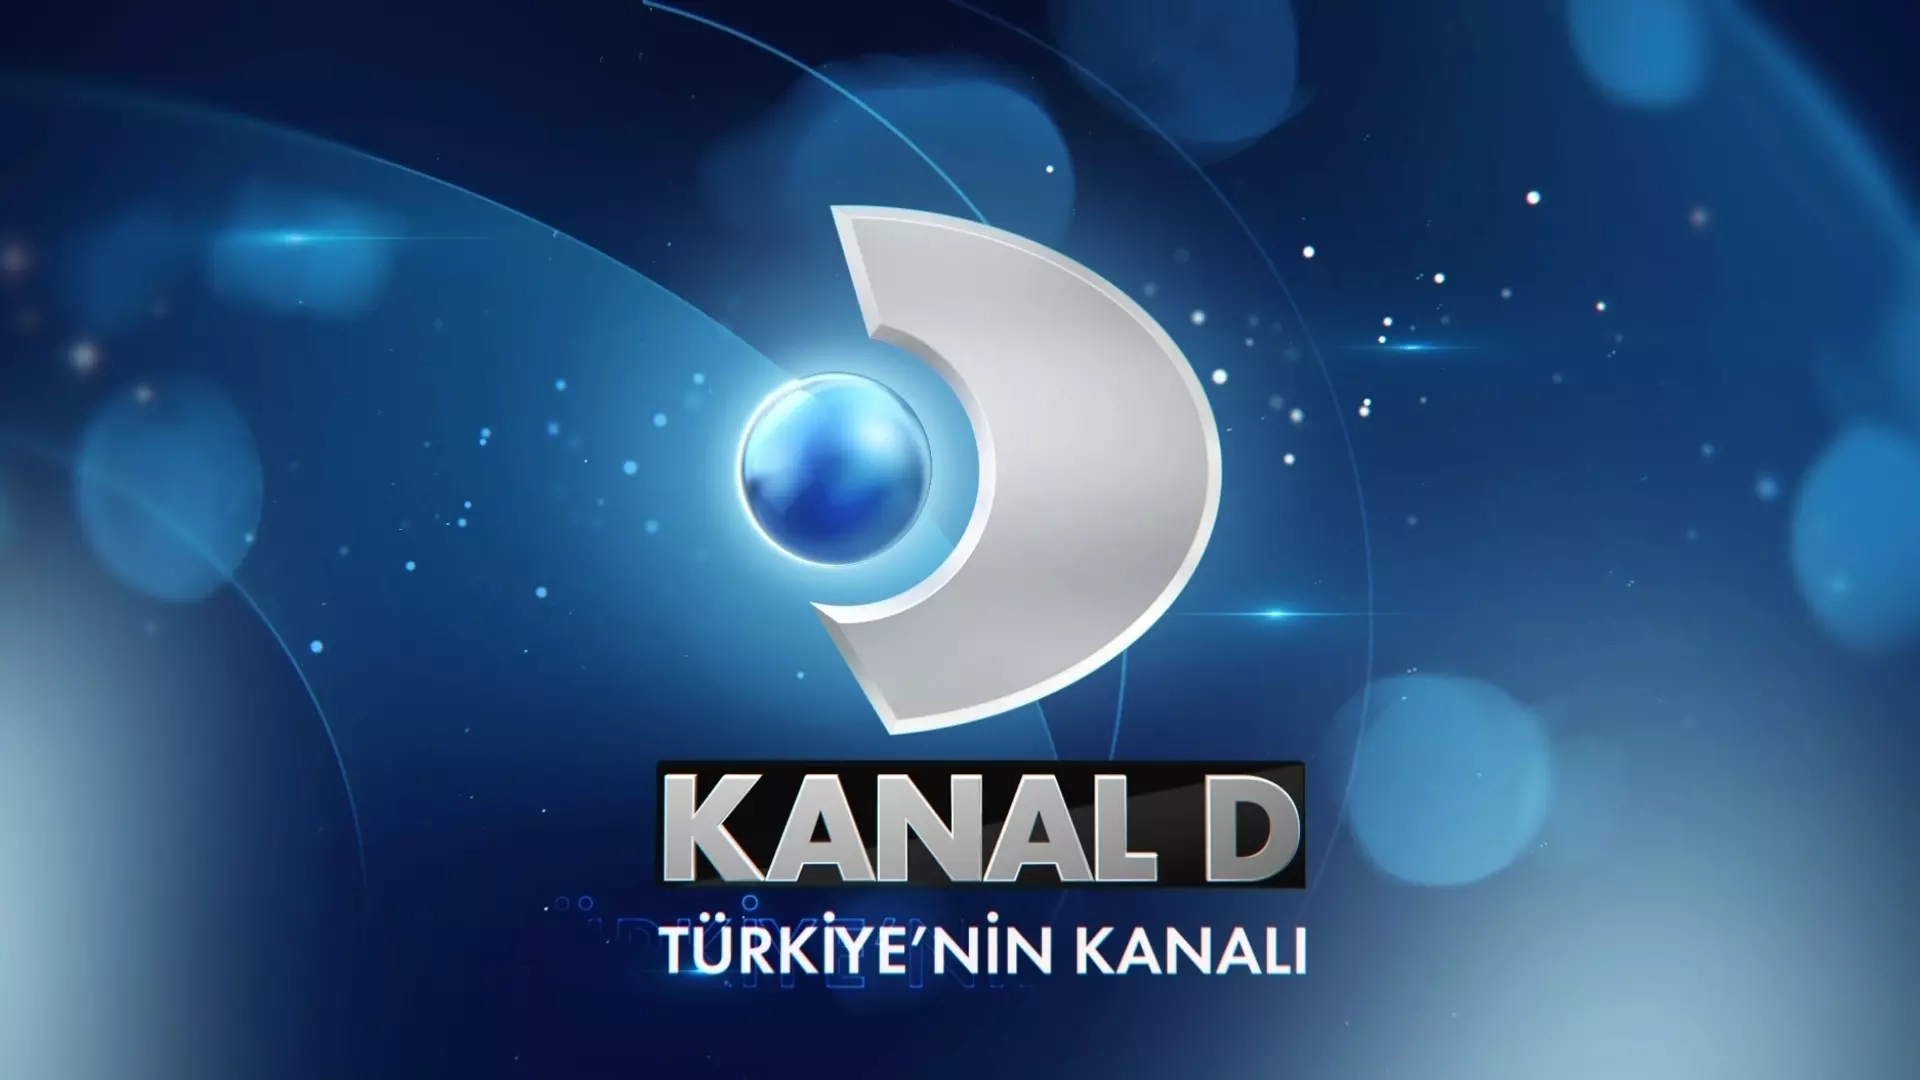 Kanal D'den yeni dizi projesi: Annem, Ankara Kanal D, başarılı bir sezonun ardından sonbahara iddialı dizilerle hazırlanıyor. Bu